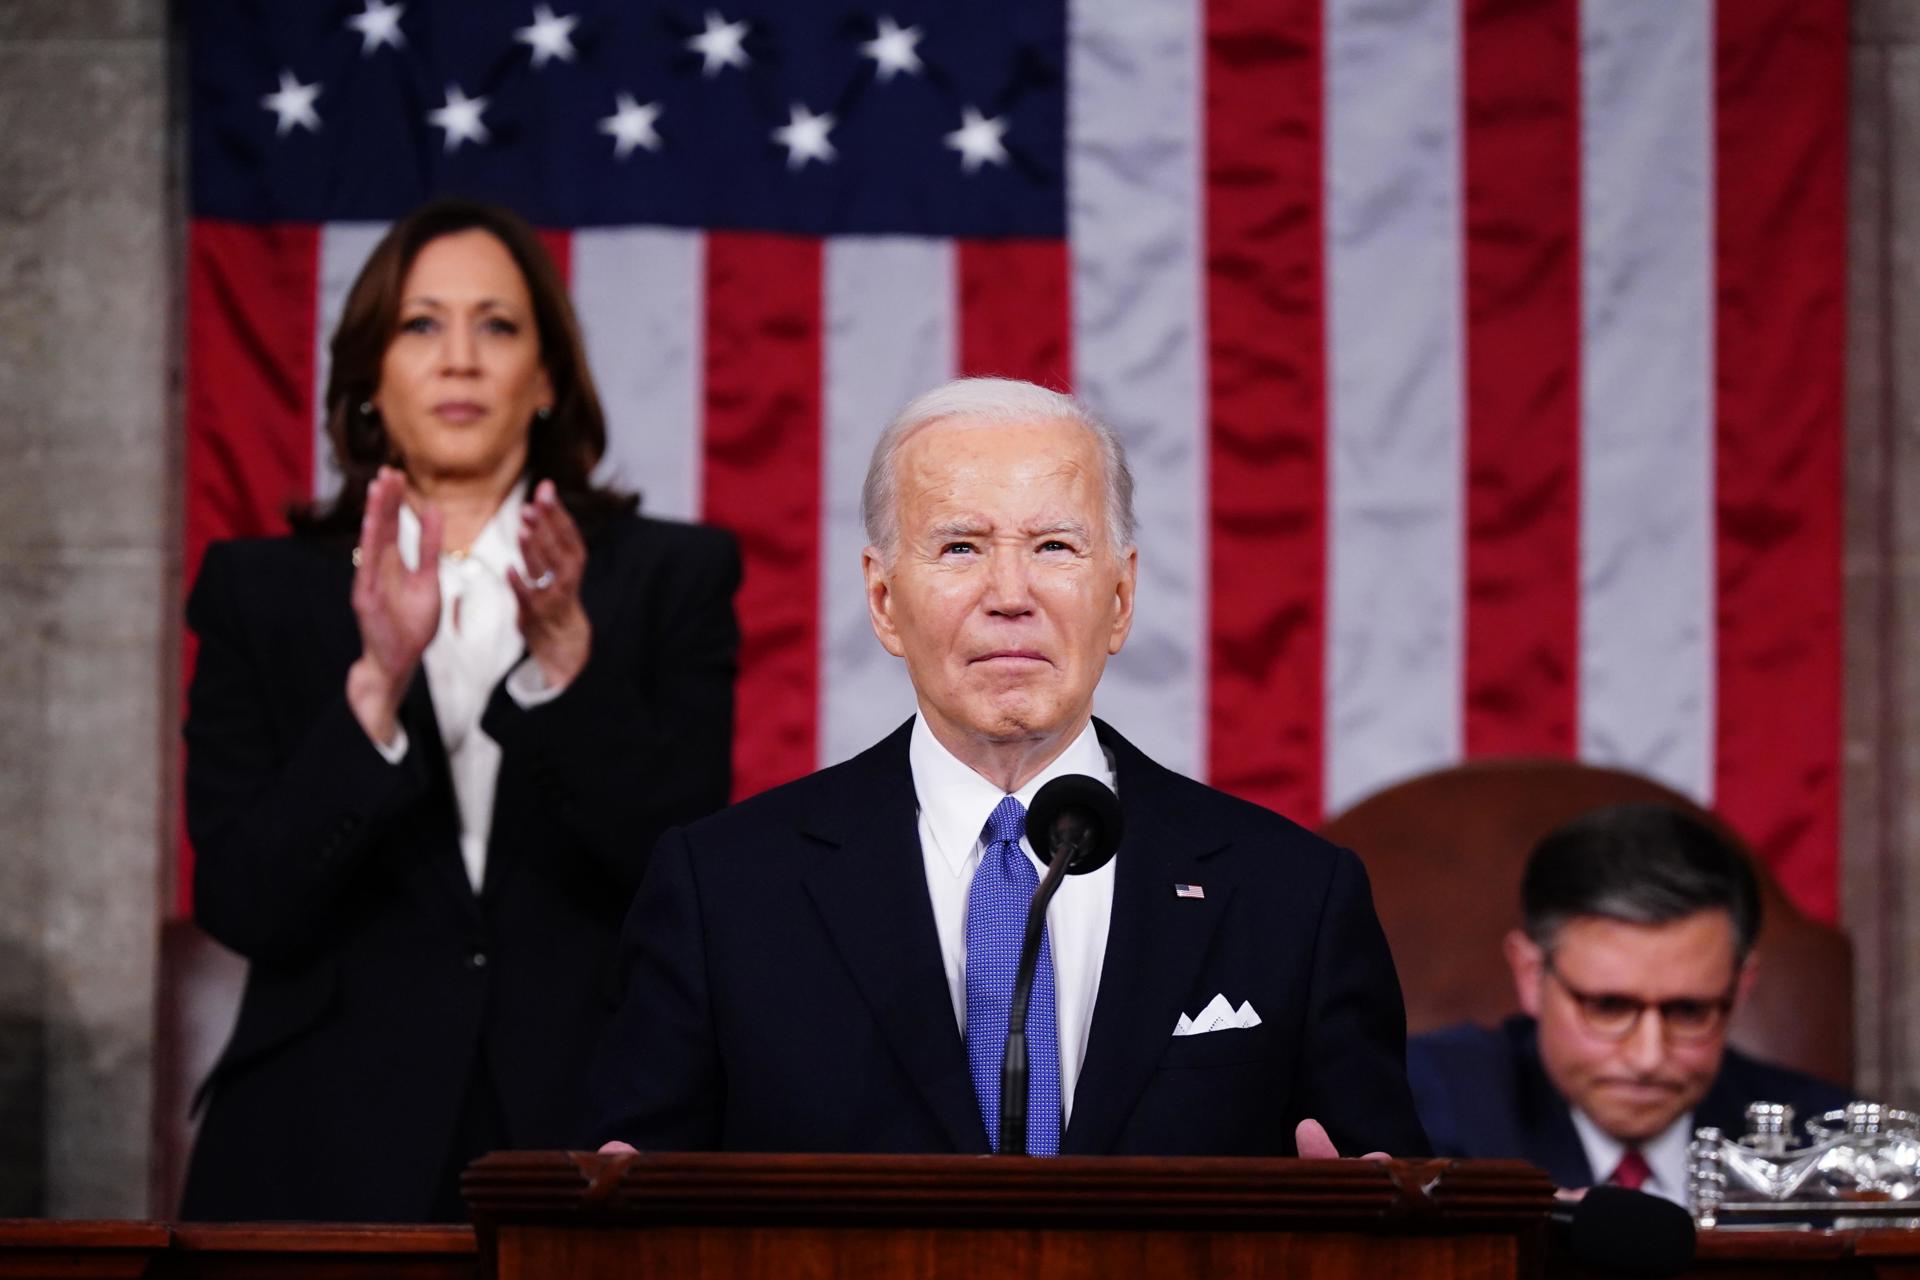 El presidente de Estados Unidos, Joe Biden, fue registrado este jueves, 7 de marzo, al dar su discurso sobre el Estado de la Unión, ante el Congreso e invitados al Capitolio, en Washington DC (EE.UU.. EFE/Shawn Thes/Pool